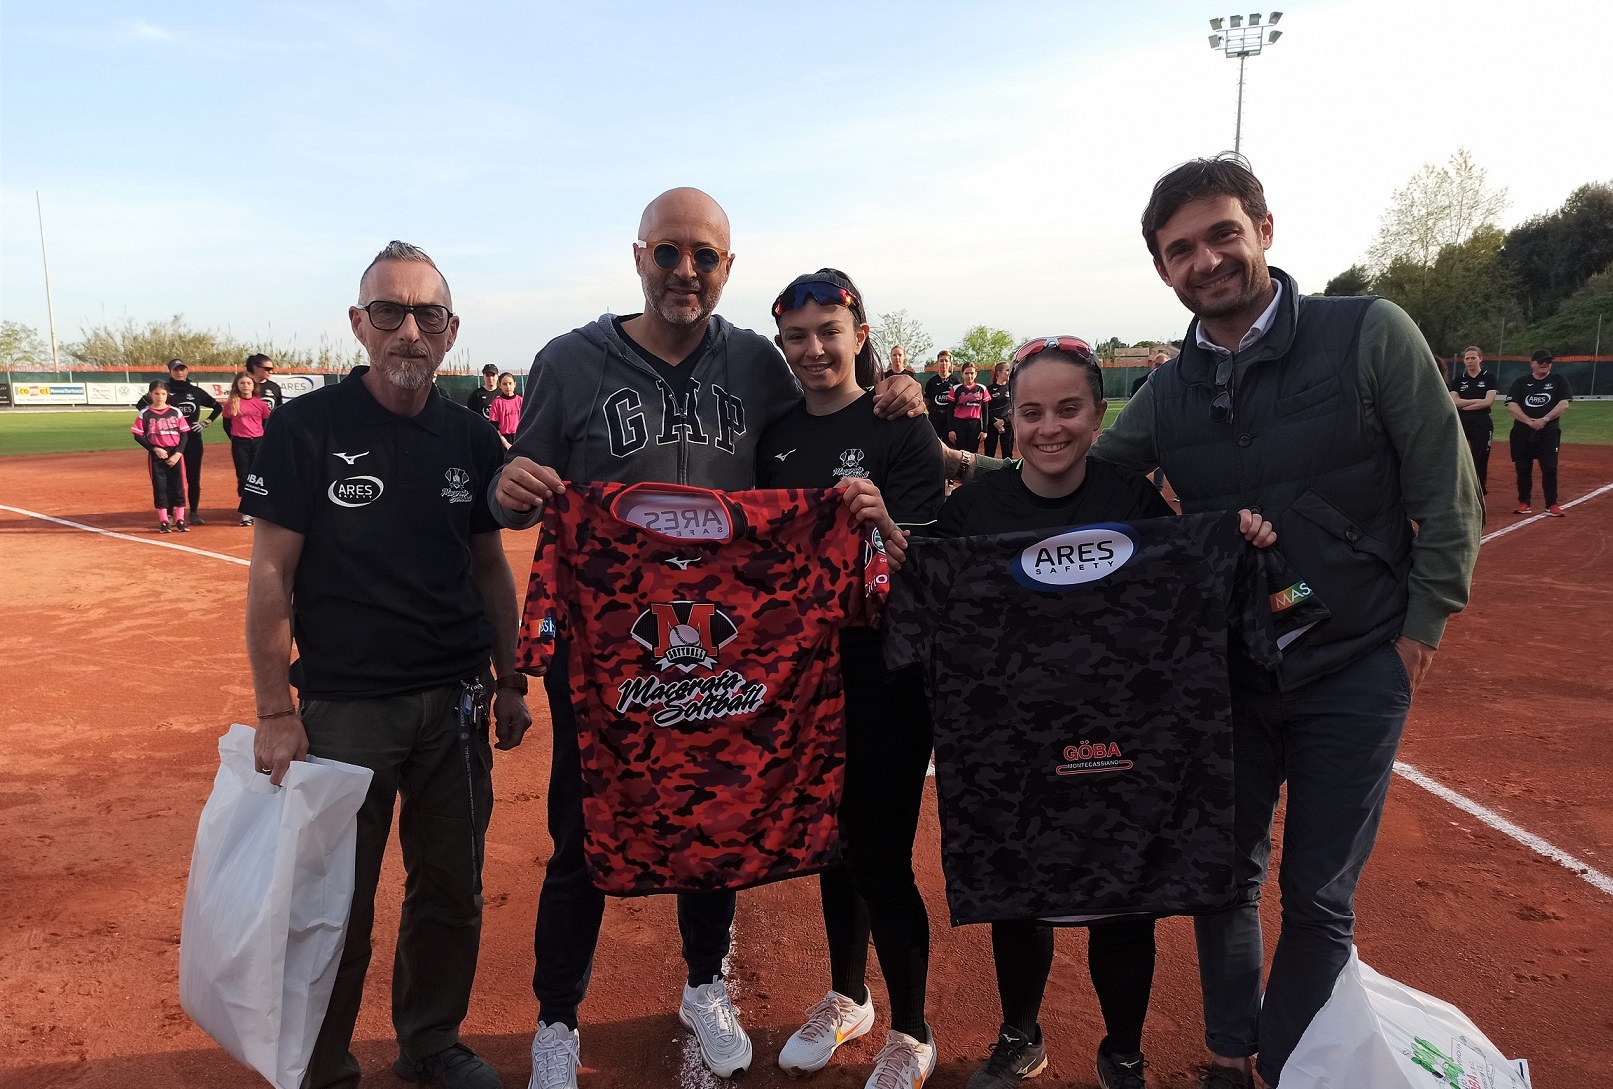 Macerata Softball ha presentato ARES, il main sponsor per l’A1